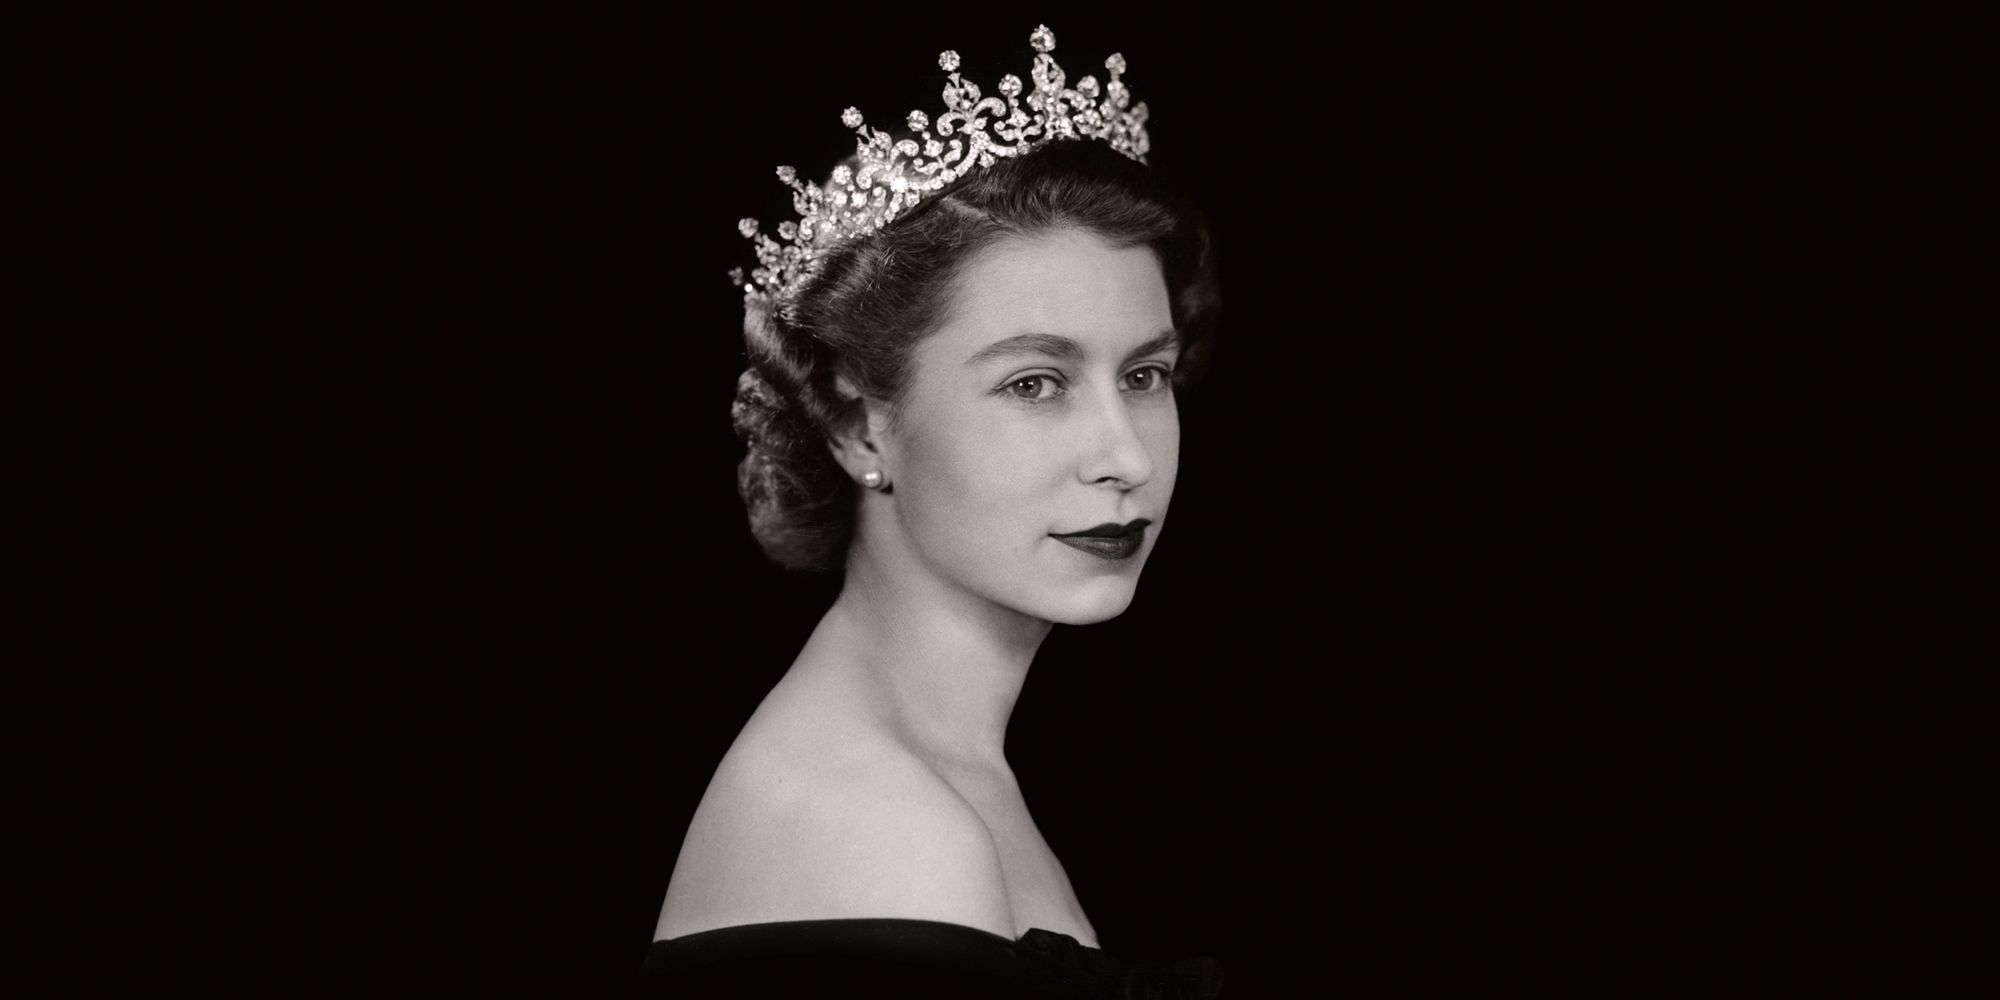 Élisabeth II (エリザベート二世)